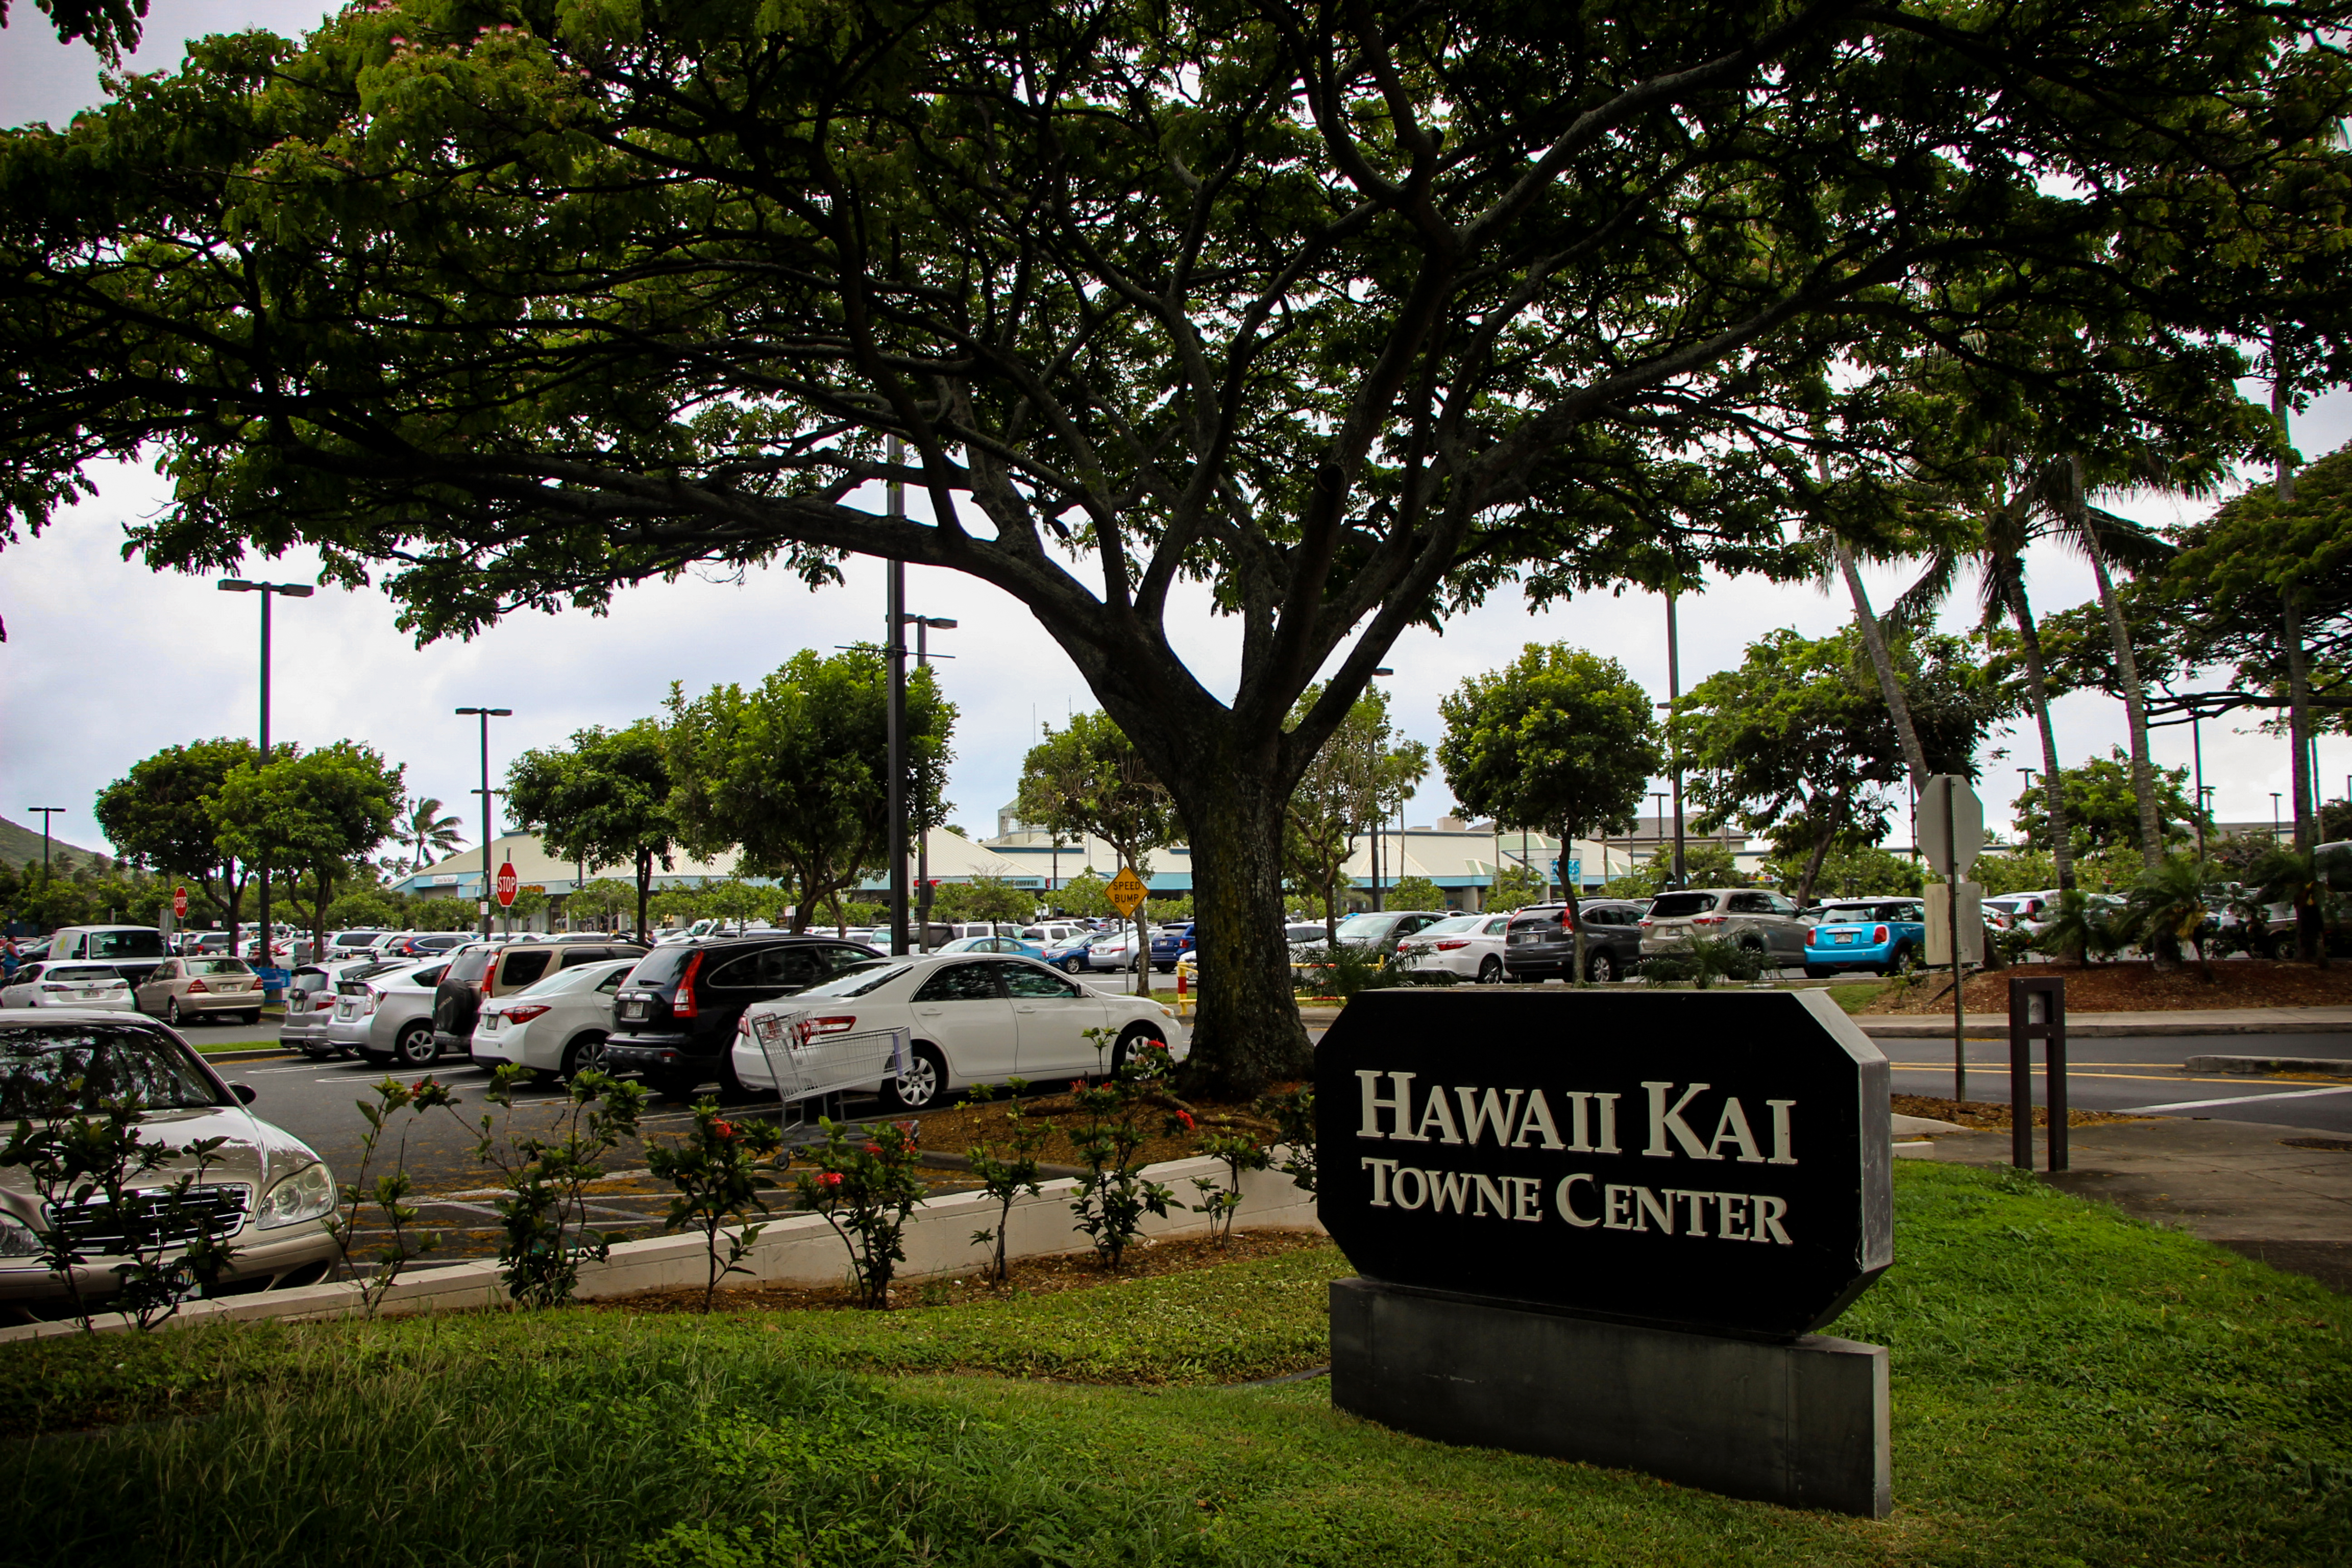 Hawaii Kai Town Center